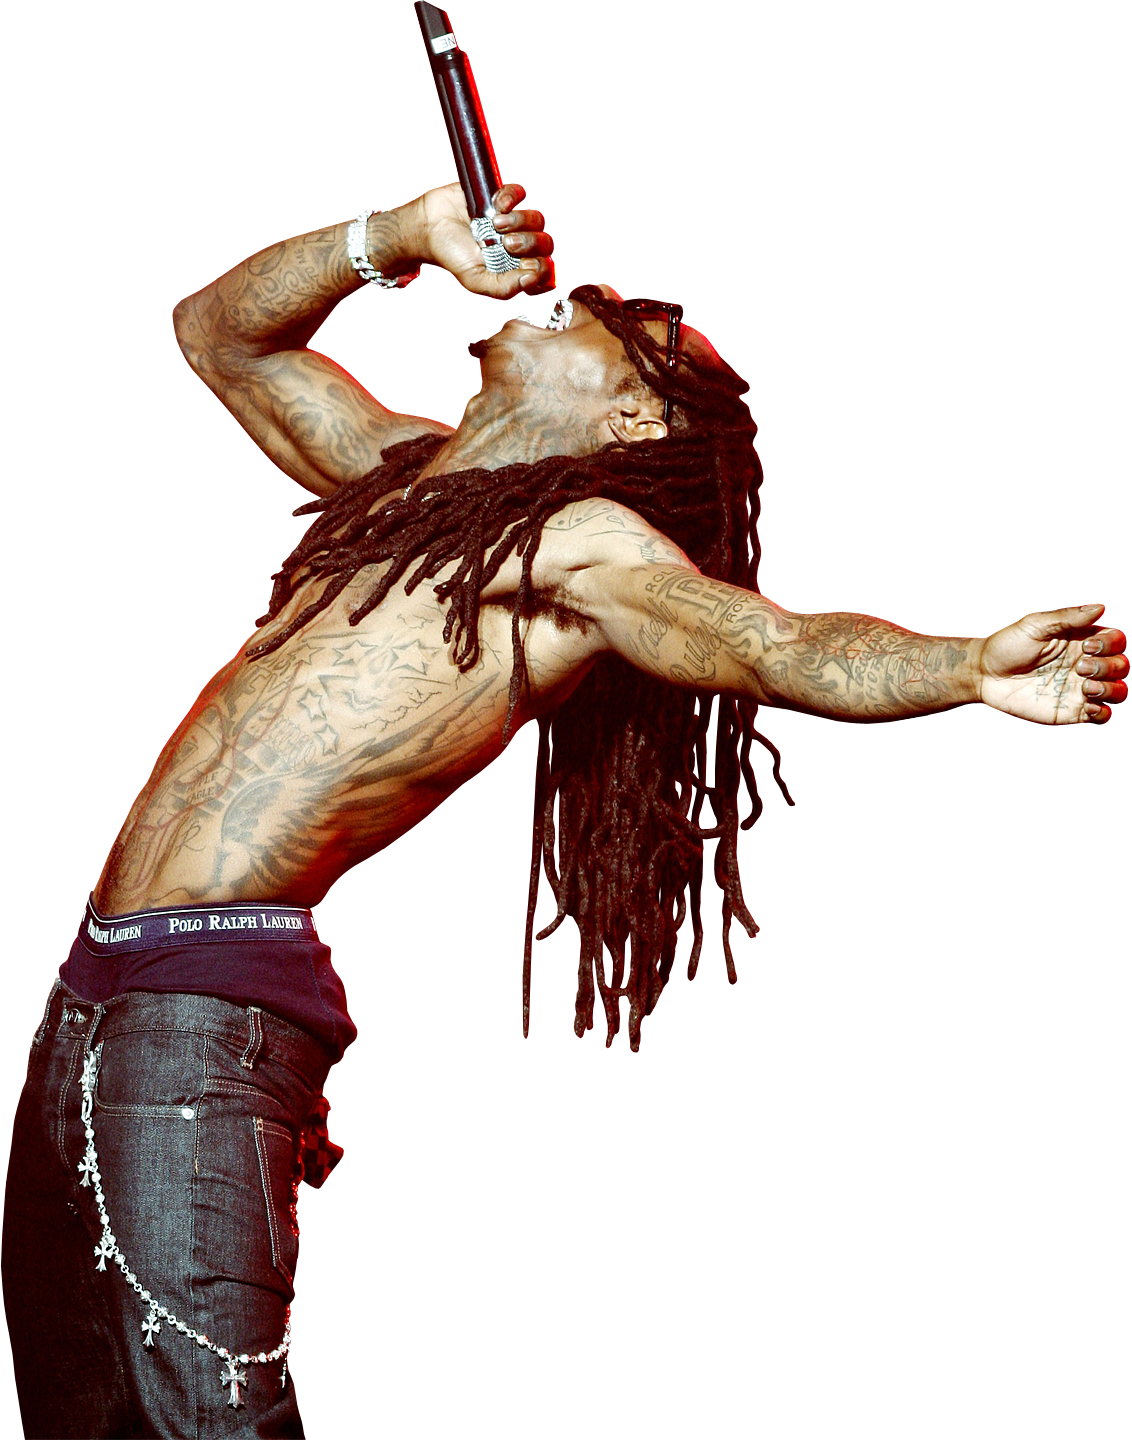 File:Lil Wayne.png